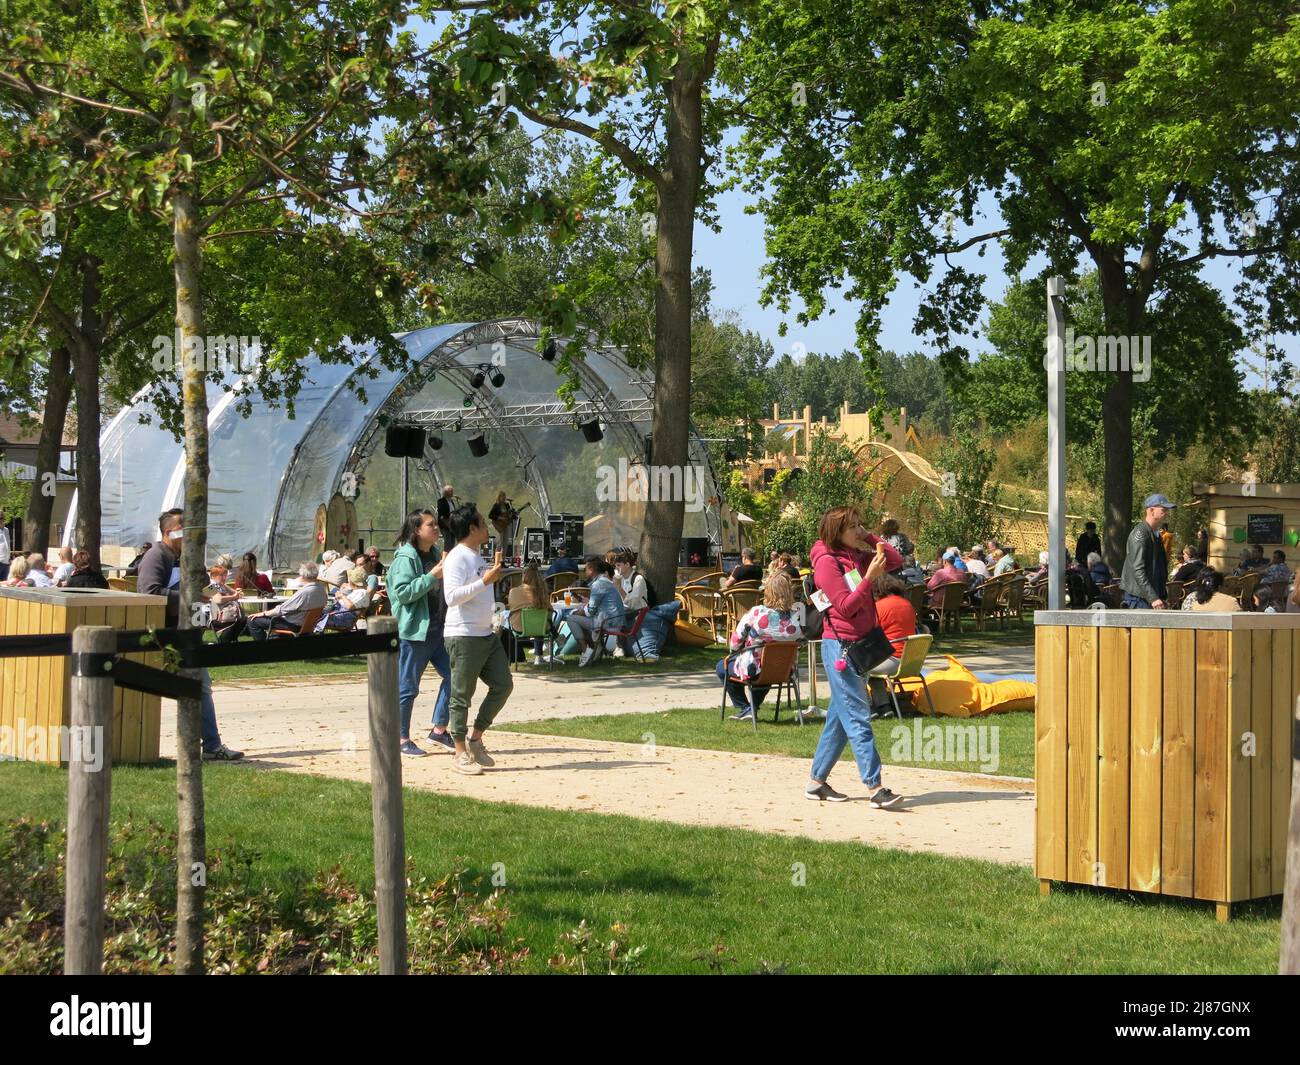 Auf dem Gelände des Standortes Floriade 2002 in Almere gibt es zahlreiche Möglichkeiten zum Essen, für Erfrischungen und für musikalische Unterhaltung. Stockfoto